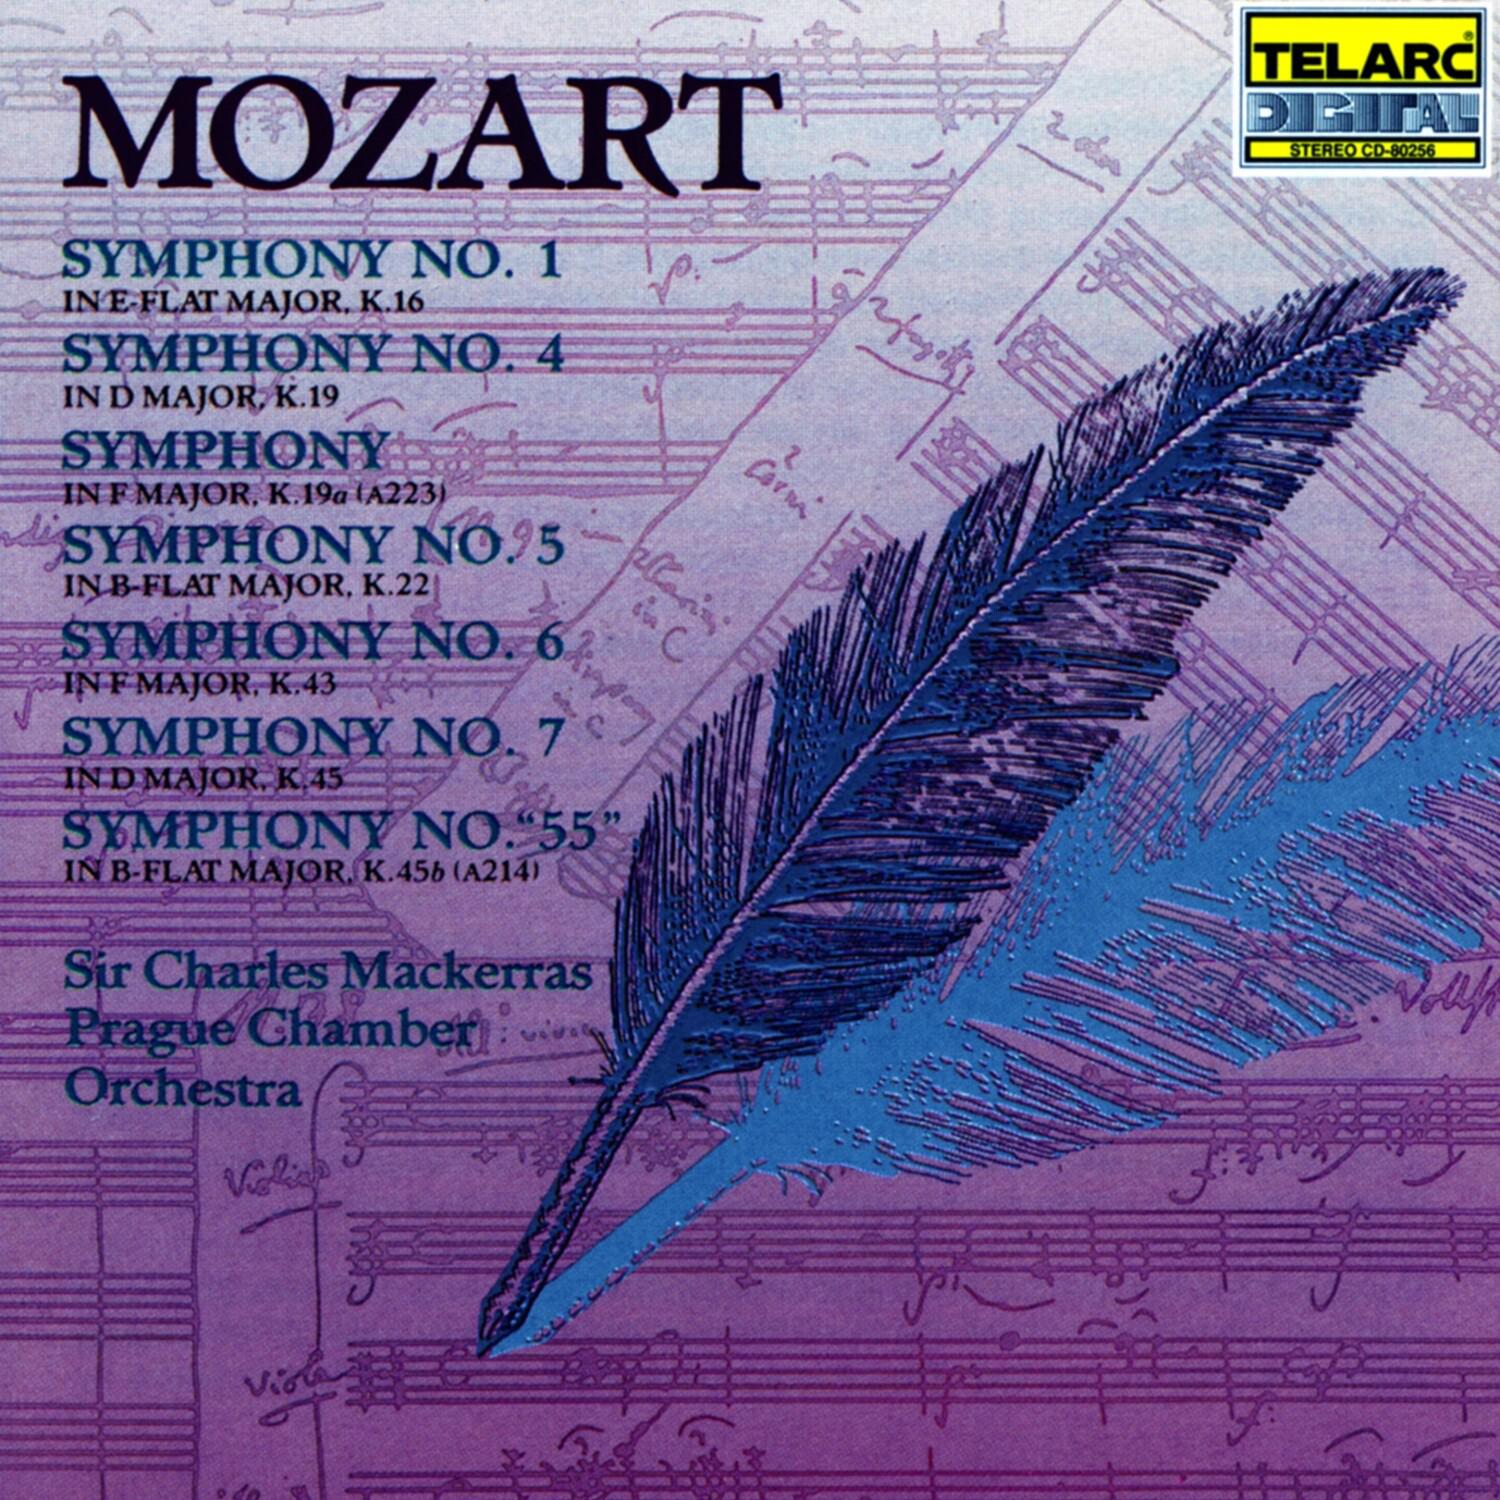 Symphony No. 5 in B-flat major, K.22: I. Allegro